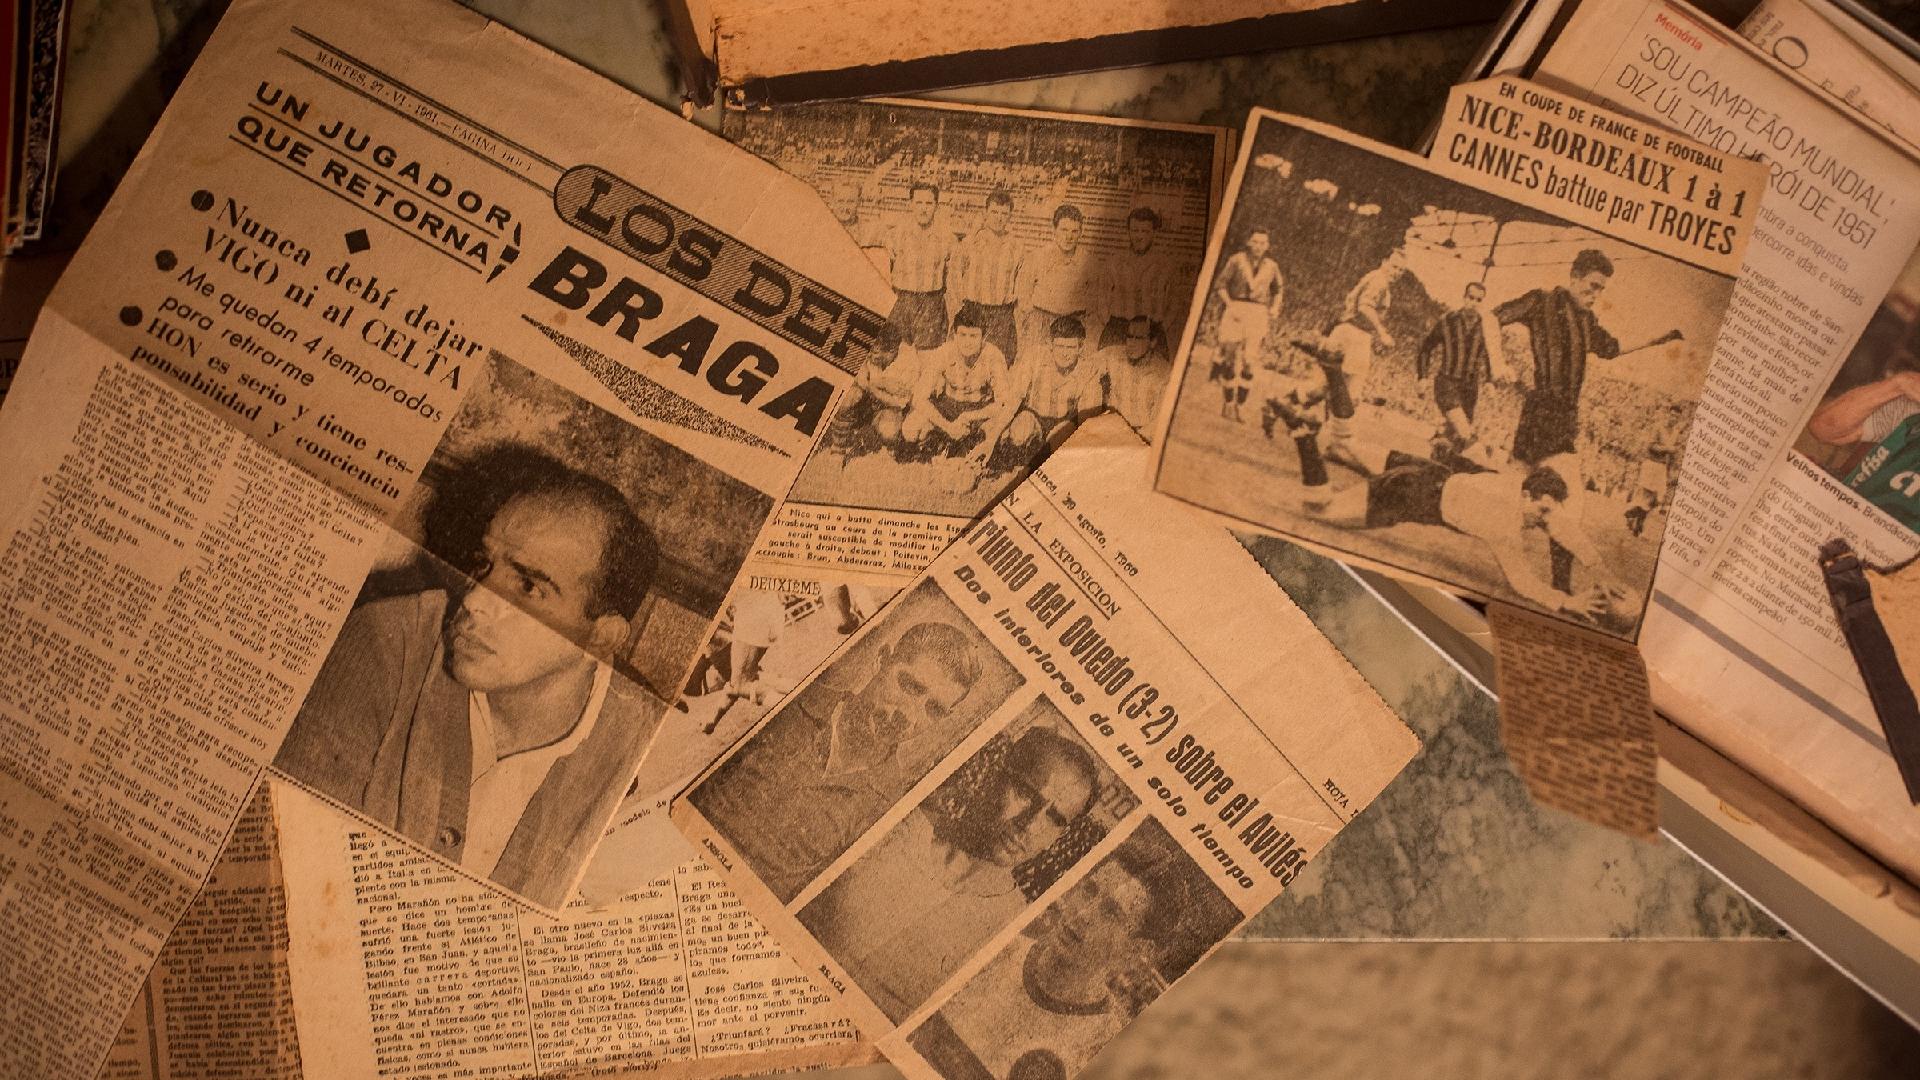 Fluminense campeão dos campeões: os 70 anos da Copa Rio em recortes de  jornais da época